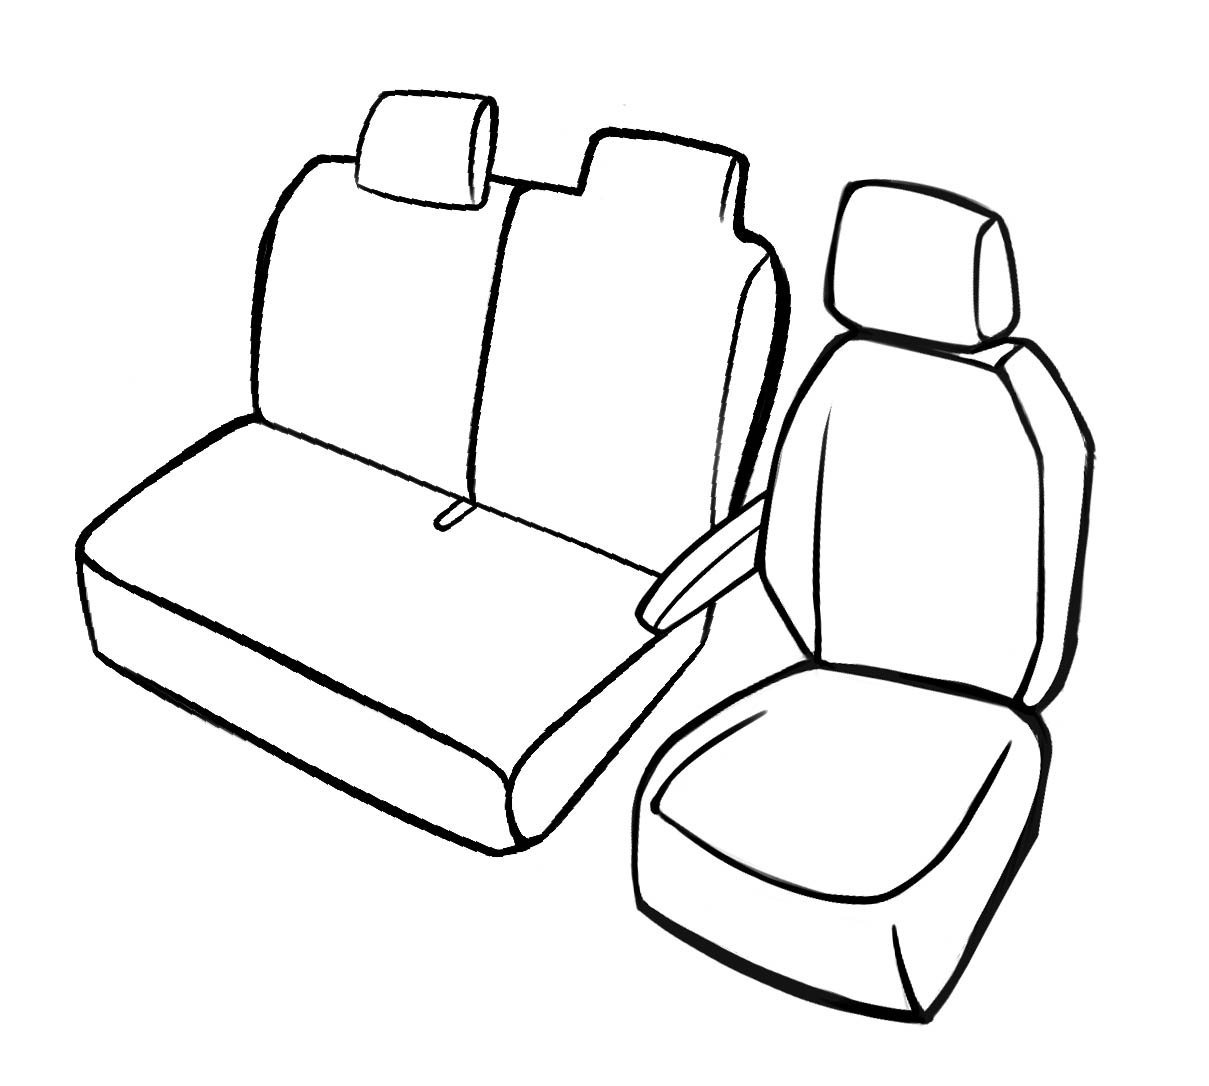 Premium Housse de siège pour Renault Master II 1998- auj., 1 housse de siège simple avant + housse d'accoudoir, 1 couverture de banc double